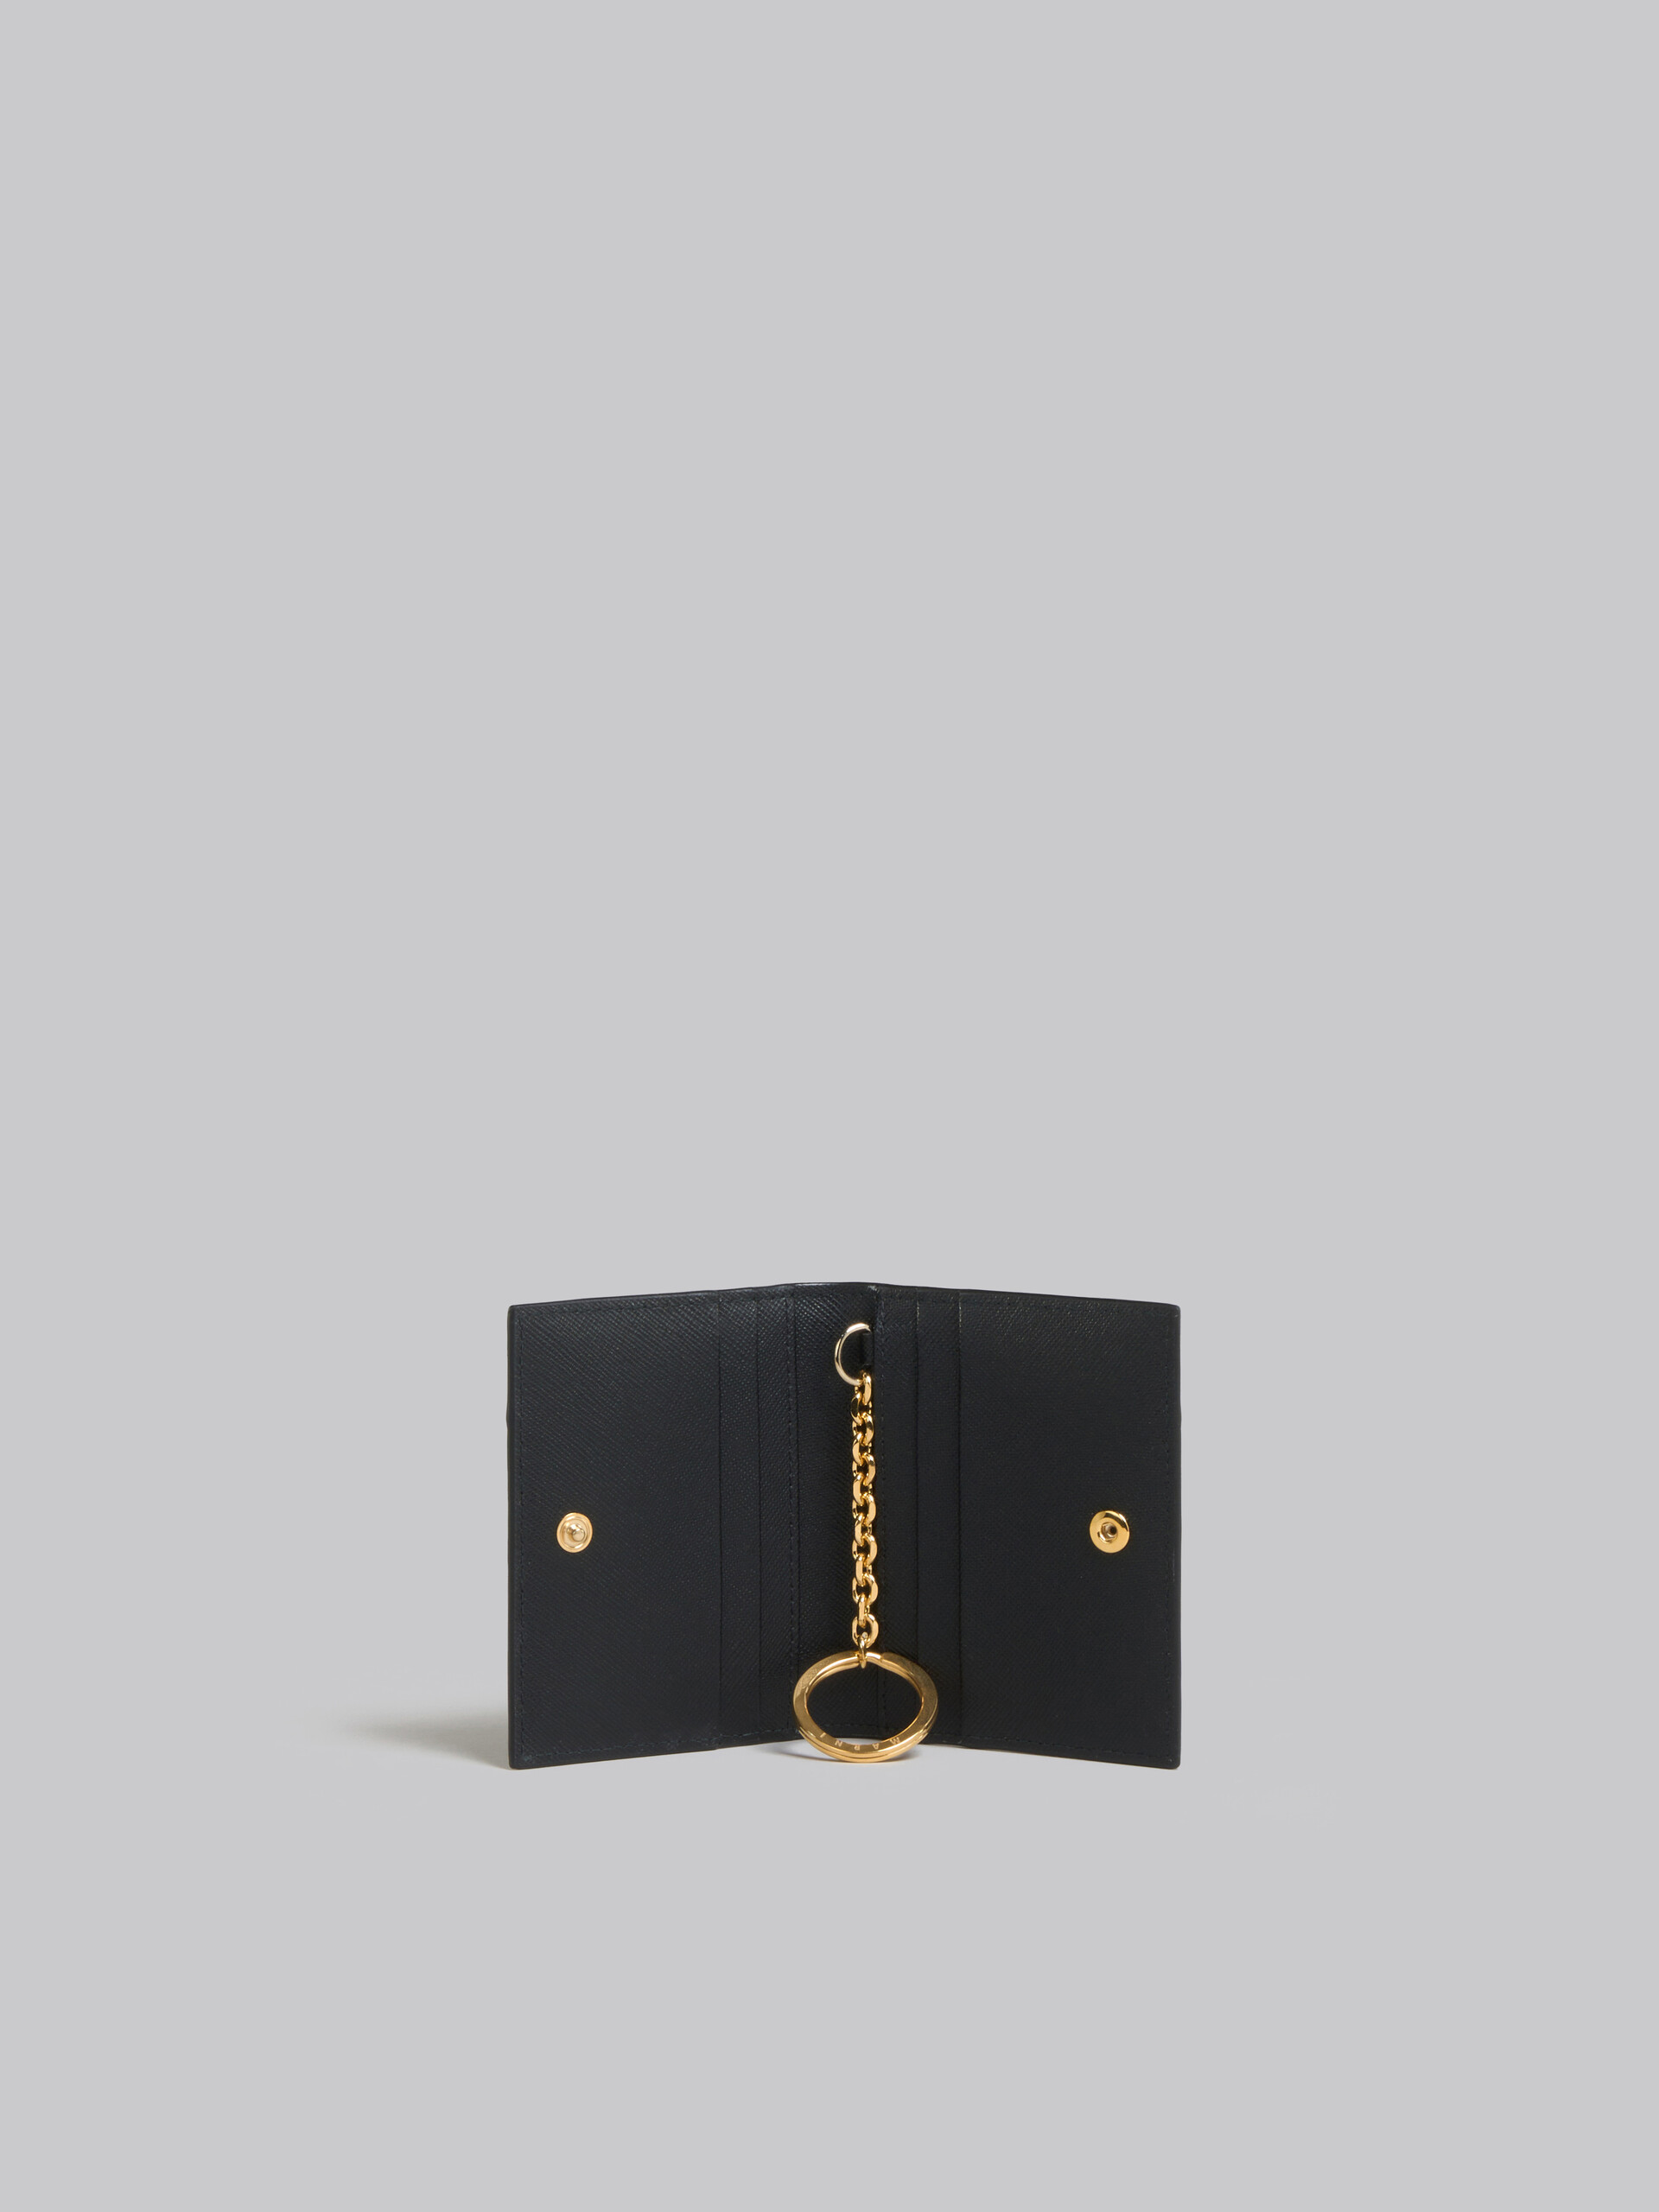 ブラック サフィアーノレザー製カードボルダー - 財布 - Image 2